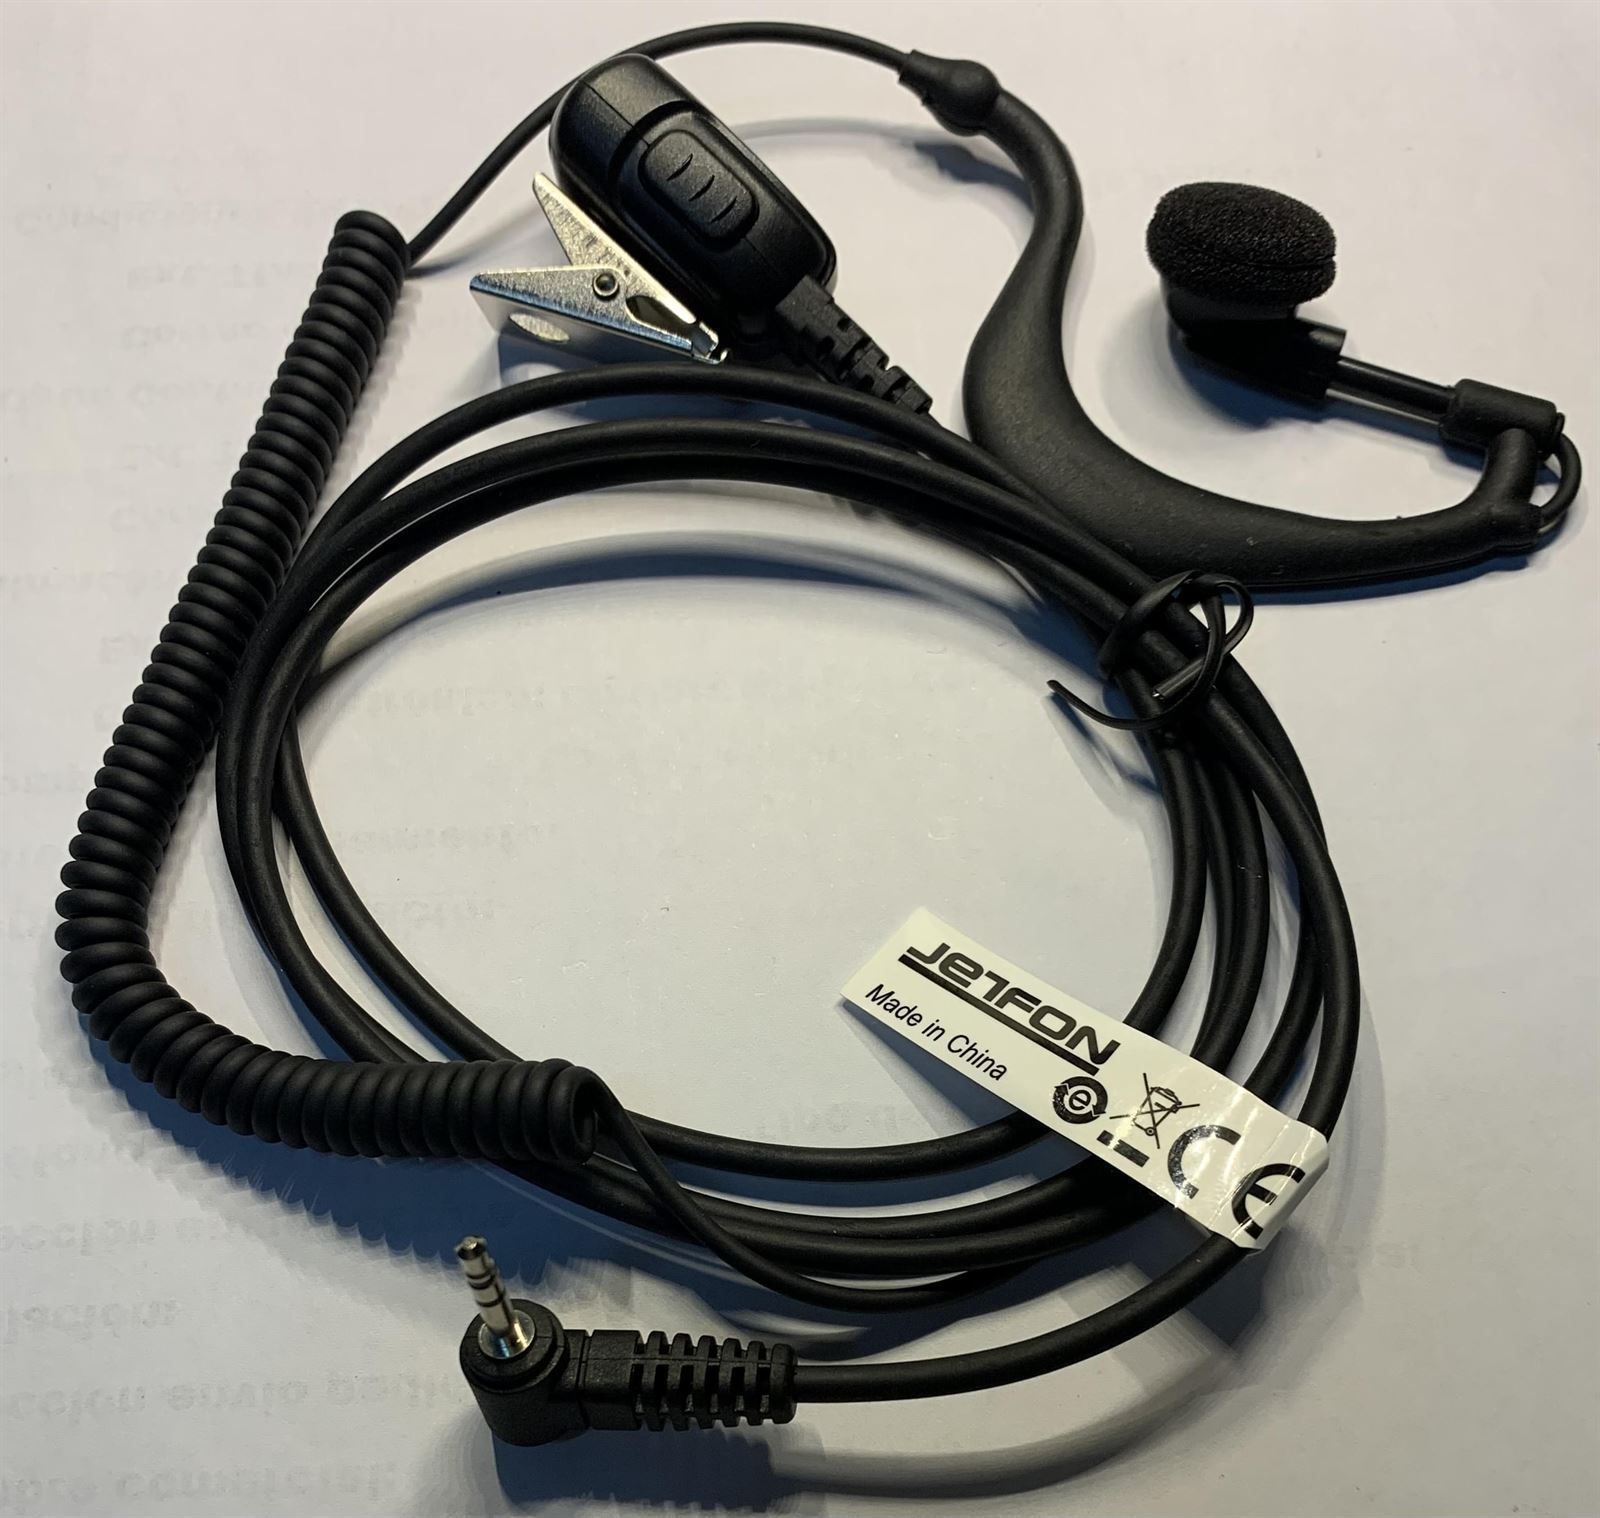 Micro/Auricular, toma lateral, PTT de solapa, orejera para walkie talkie LIBRE PMR con conector minijack 2.5mm est. - Imagen 1